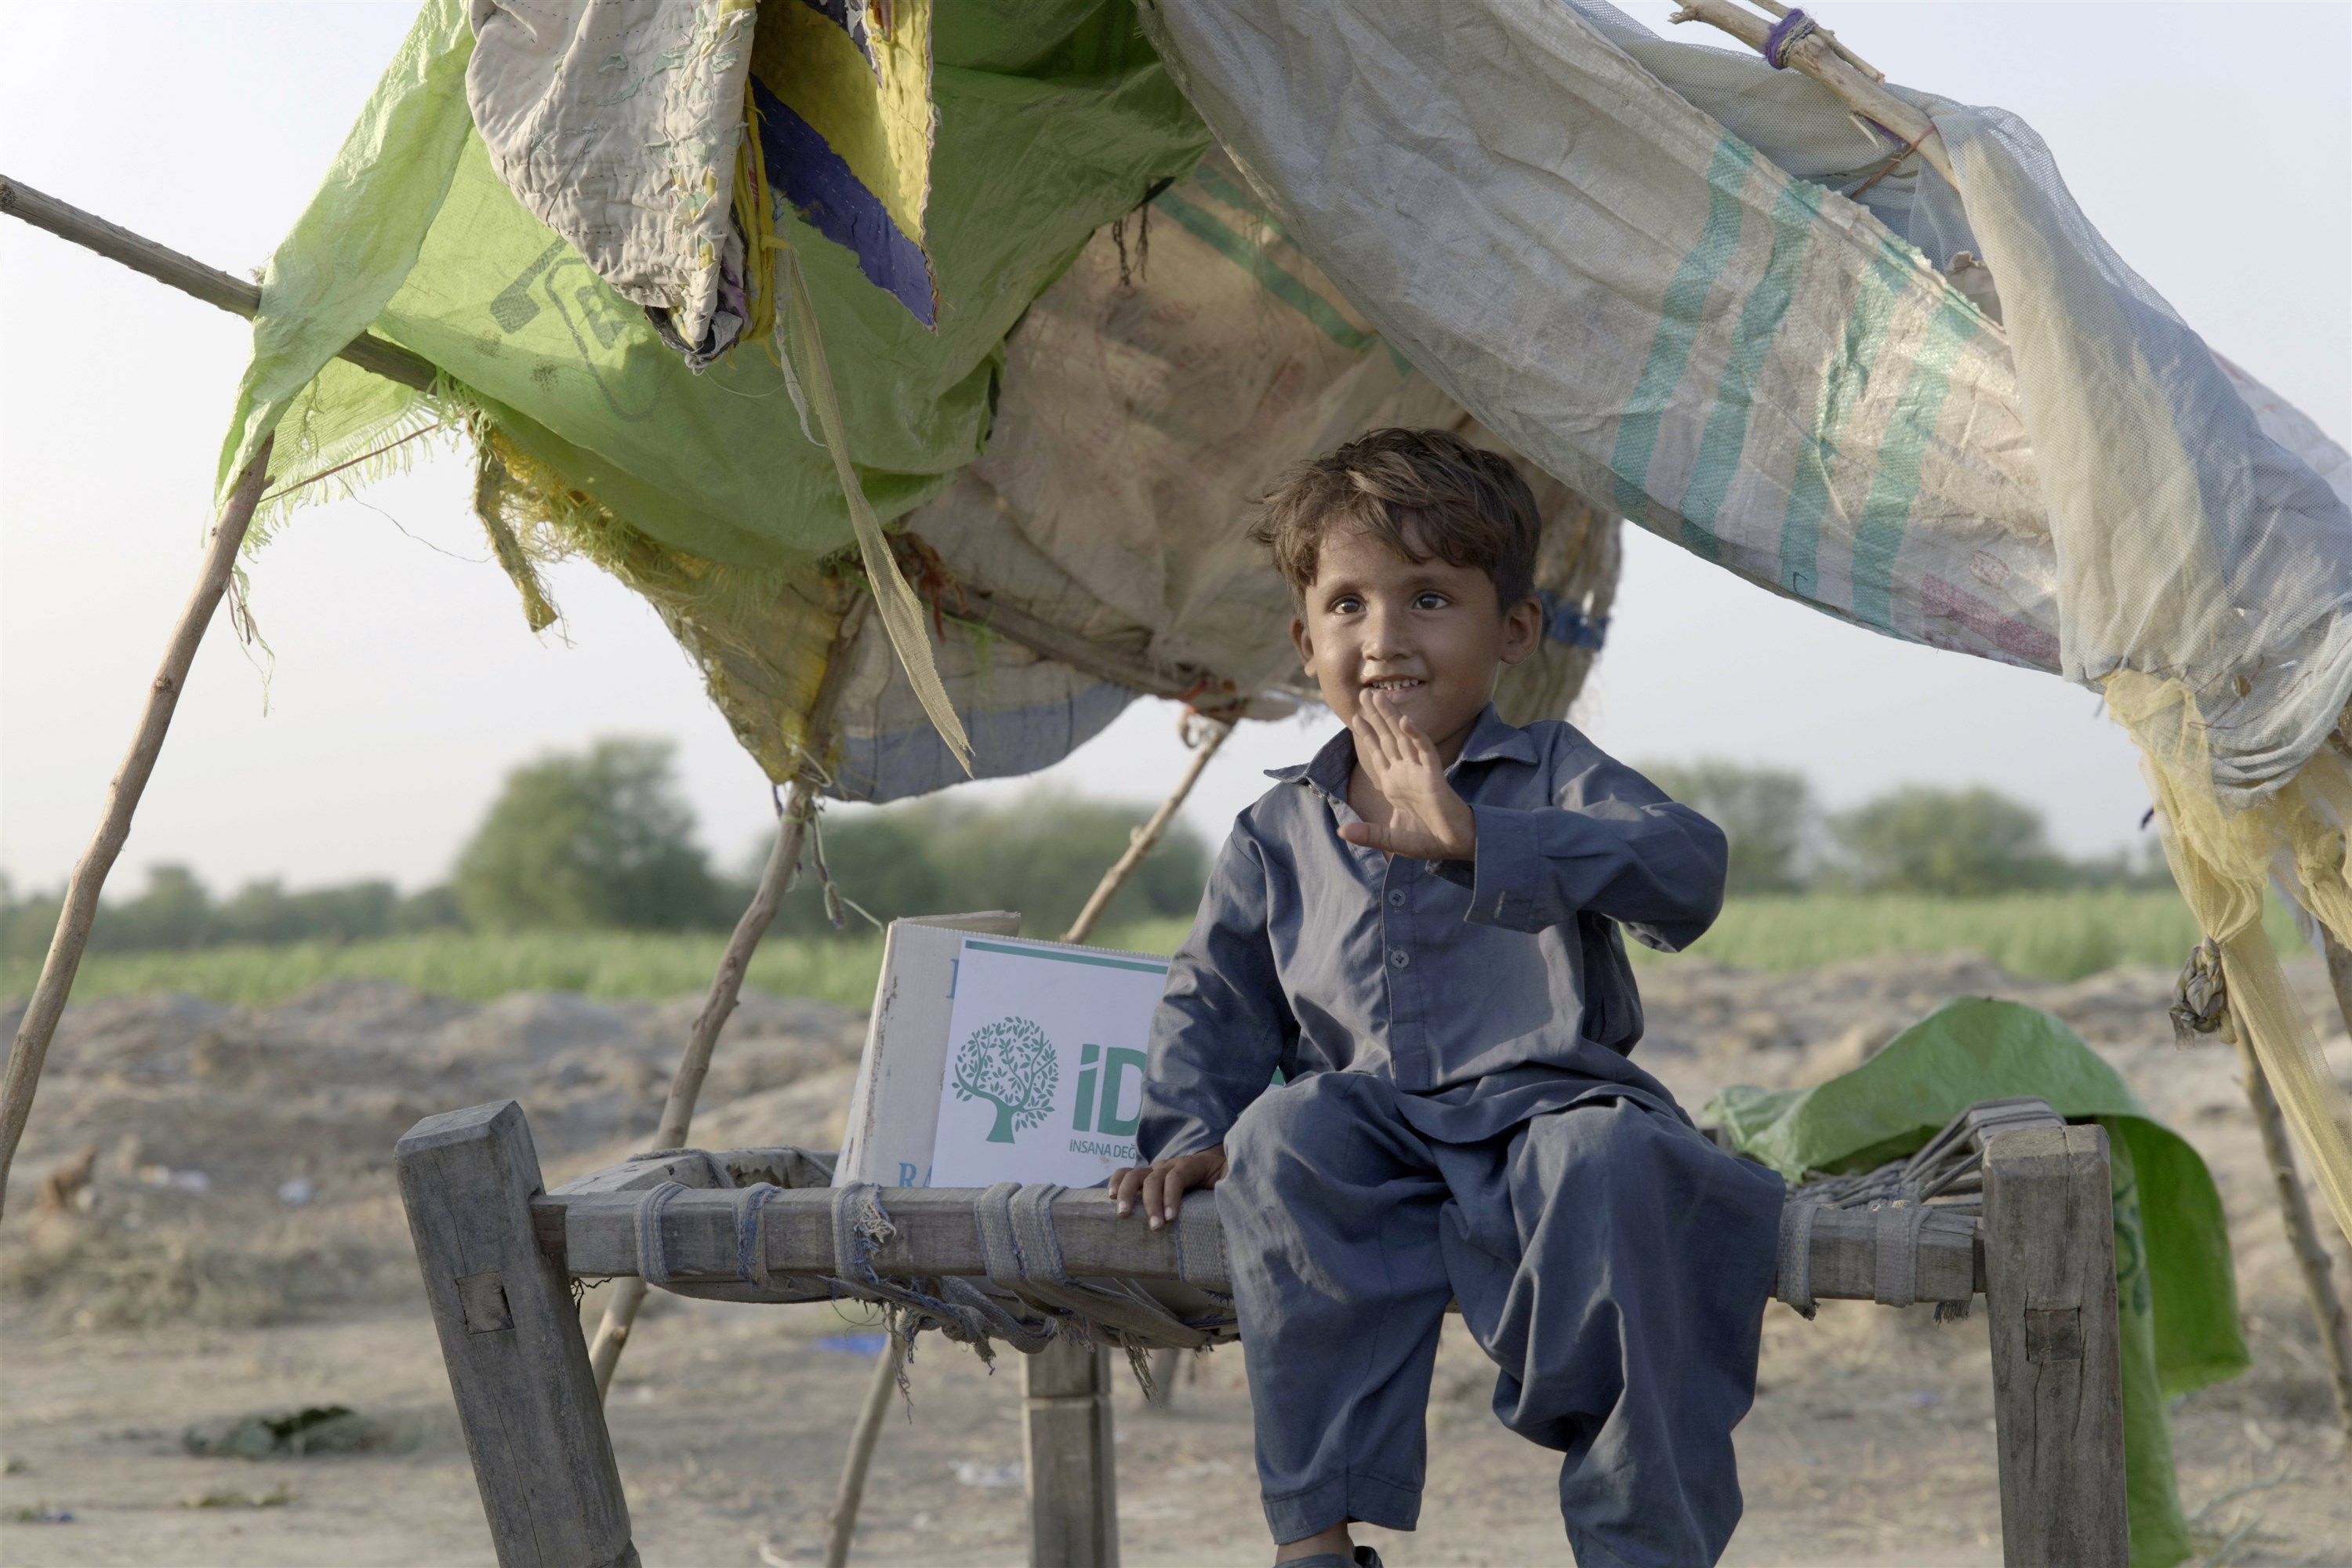 İDDEF, Pakistan'daki Mağdur Kimseleri Yalnız Bırakmıyor  (2)